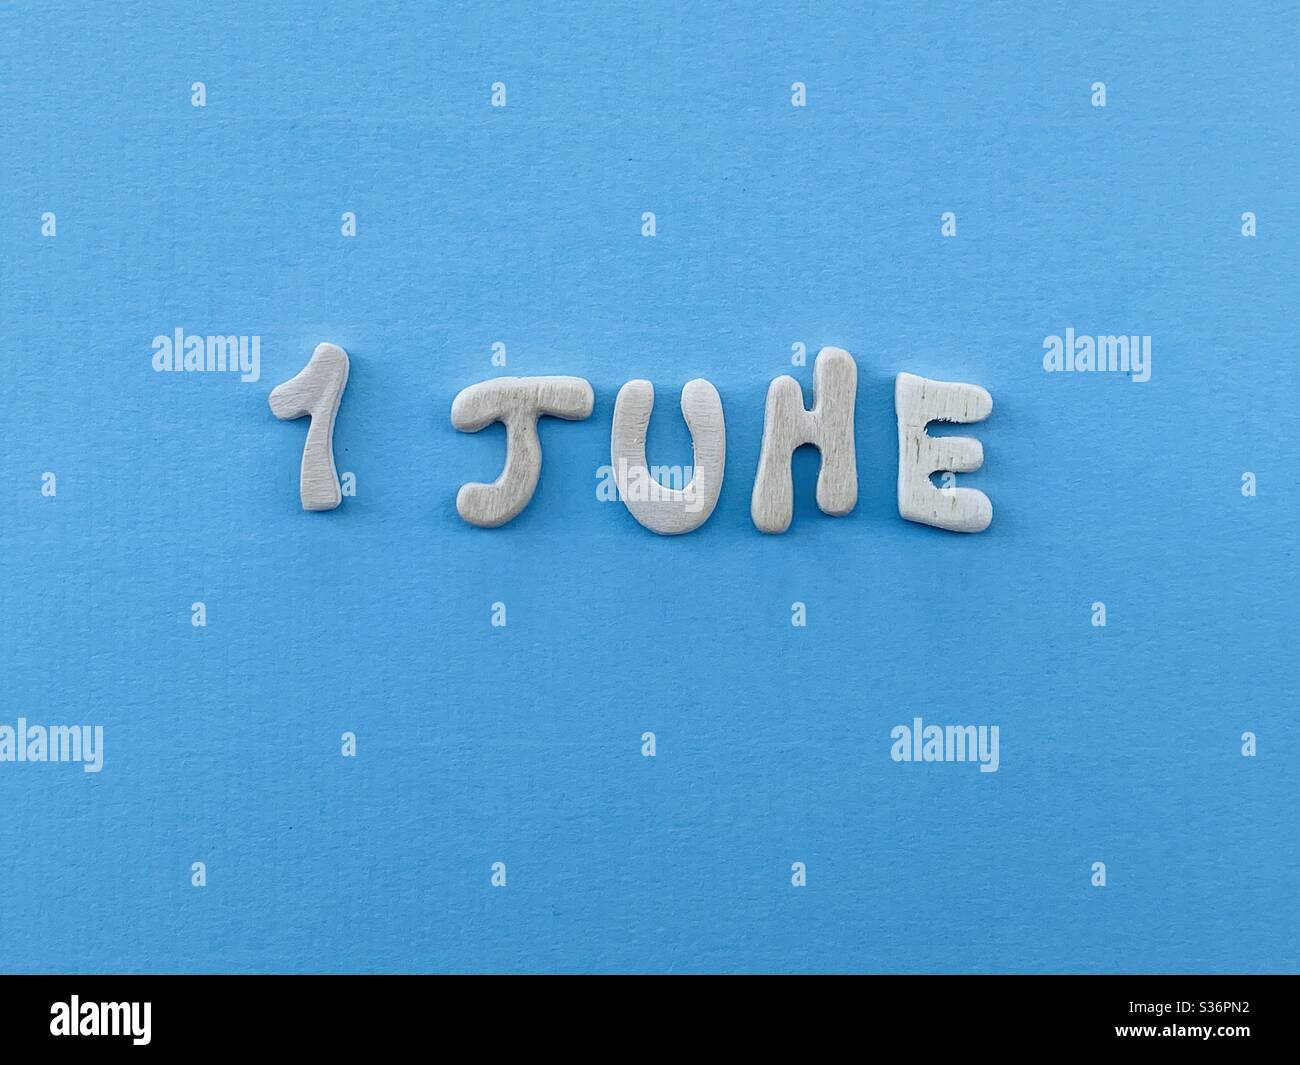 1° giugno, data di calendario composta da lettere in legno fatte a mano di colore blu Foto Stock